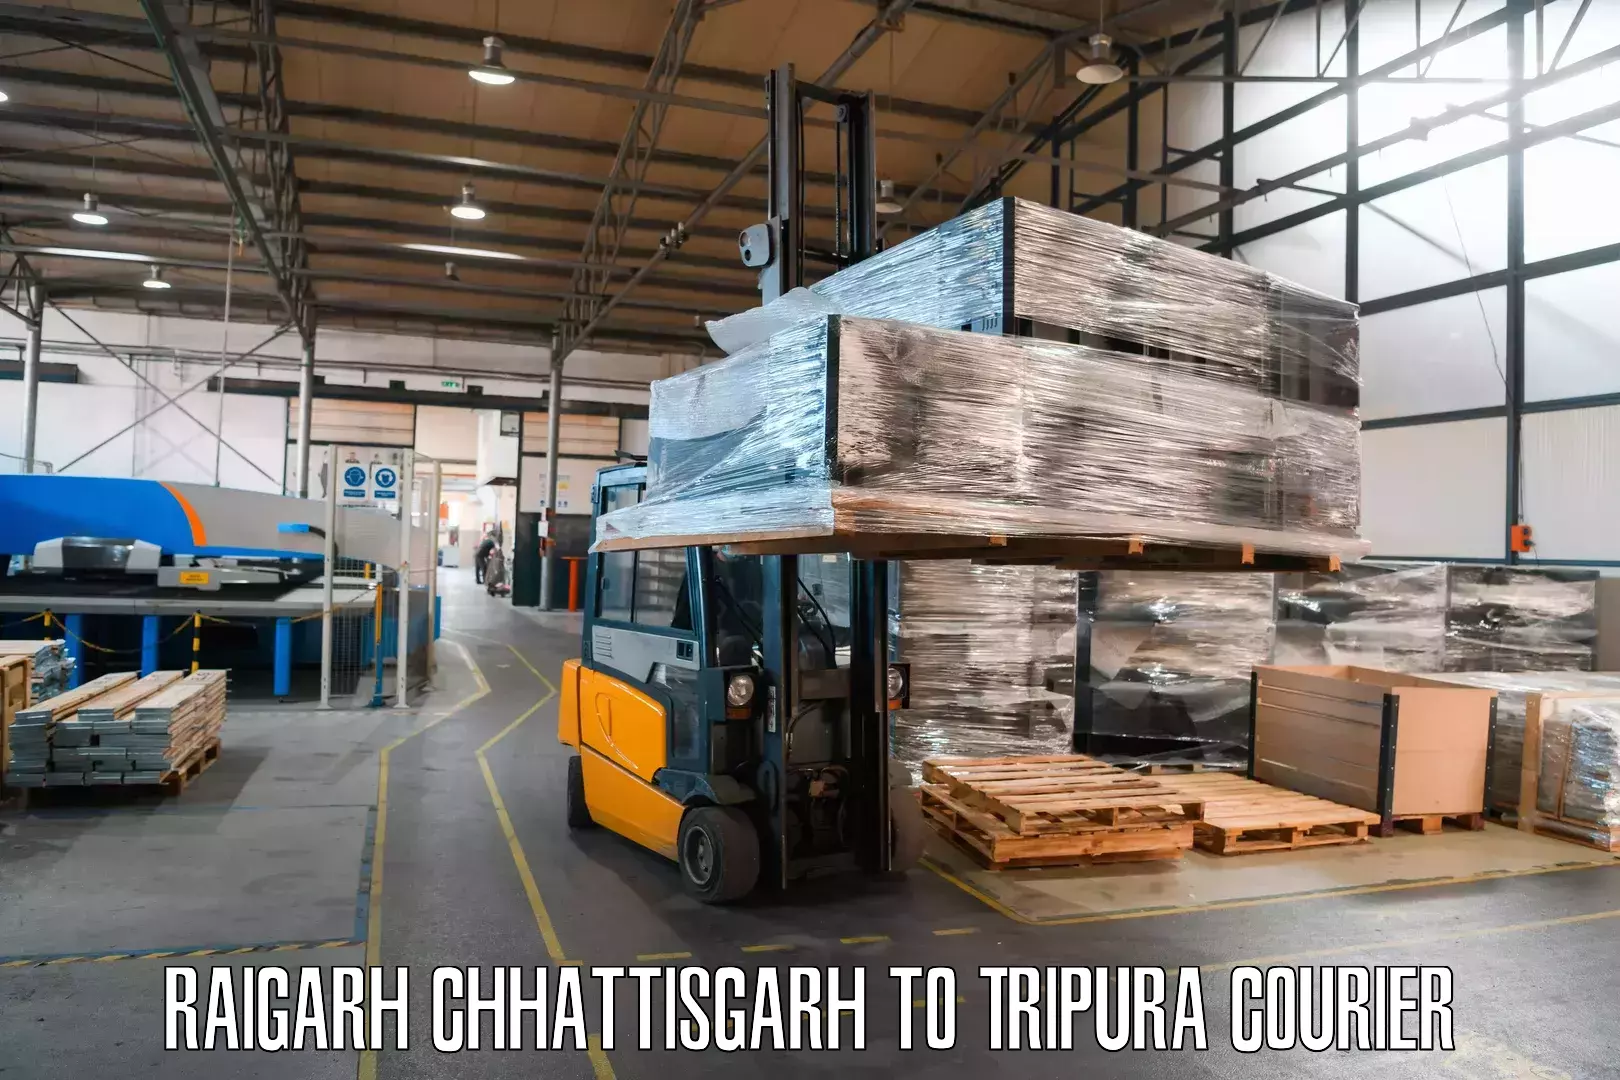 Reliable courier service in Raigarh Chhattisgarh to Dharmanagar